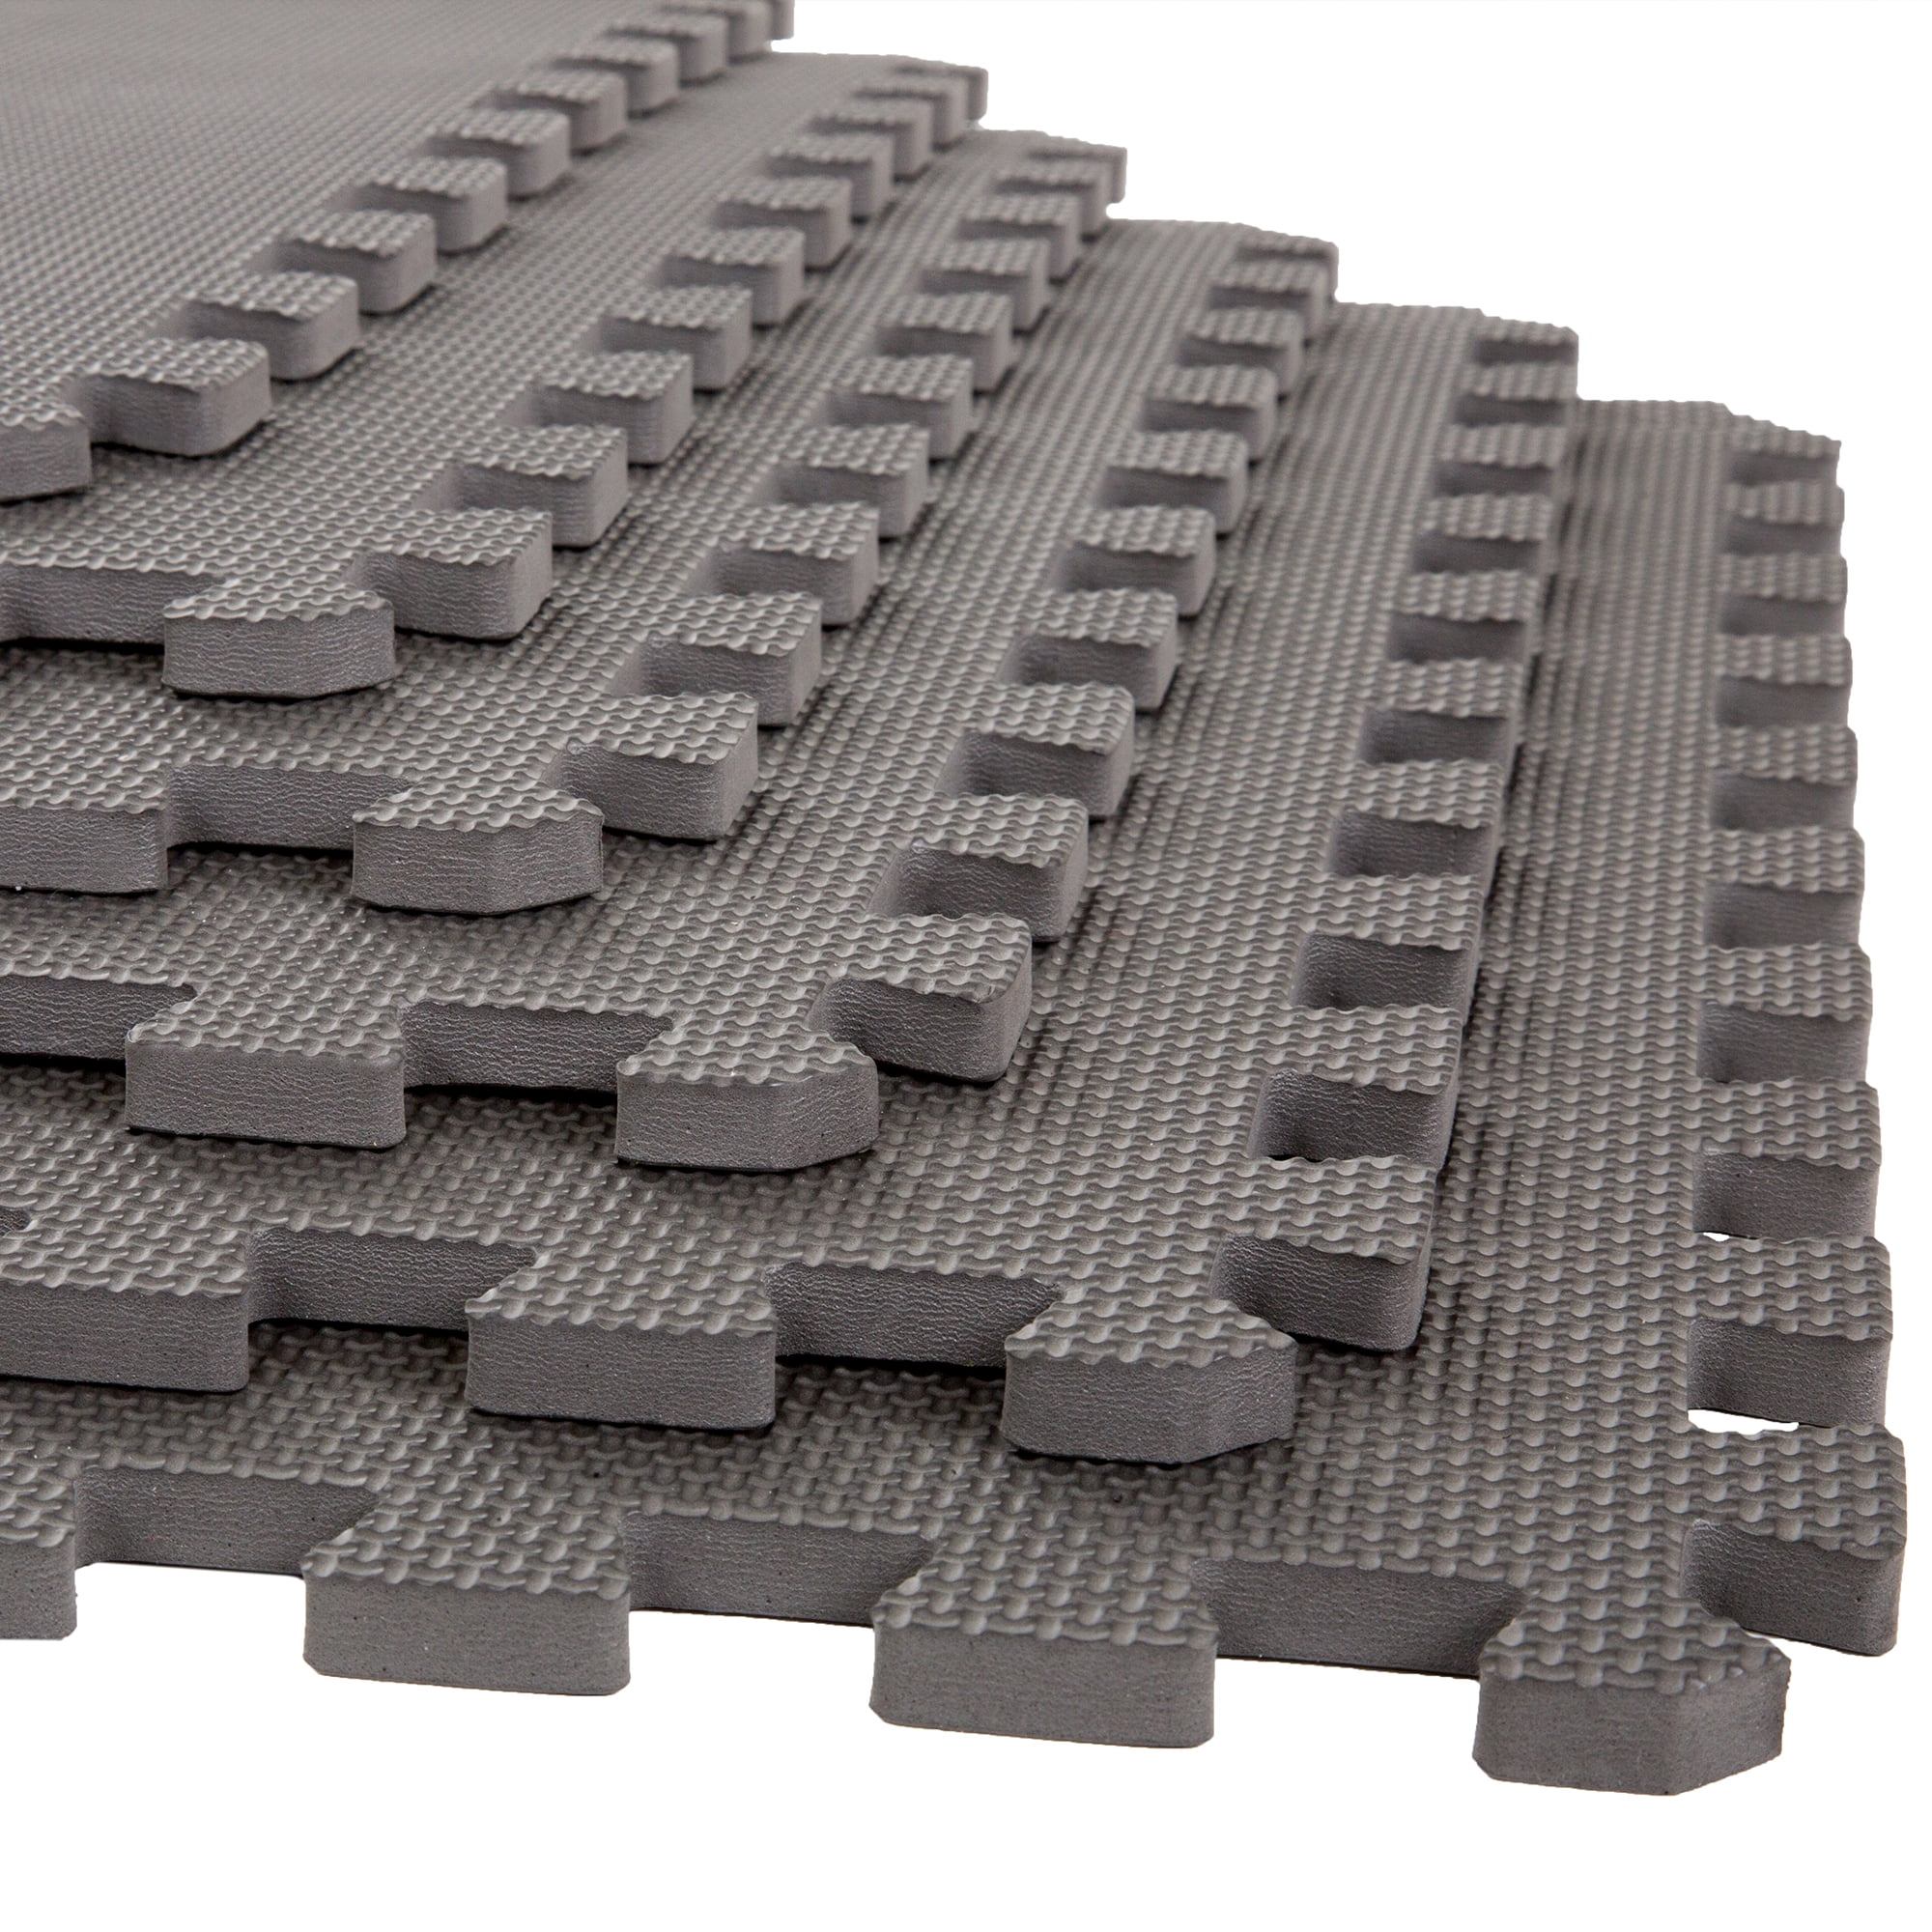 Stalwart Interlocking EVA Foam Floor Tiles for Home Gym, Yoga Mat